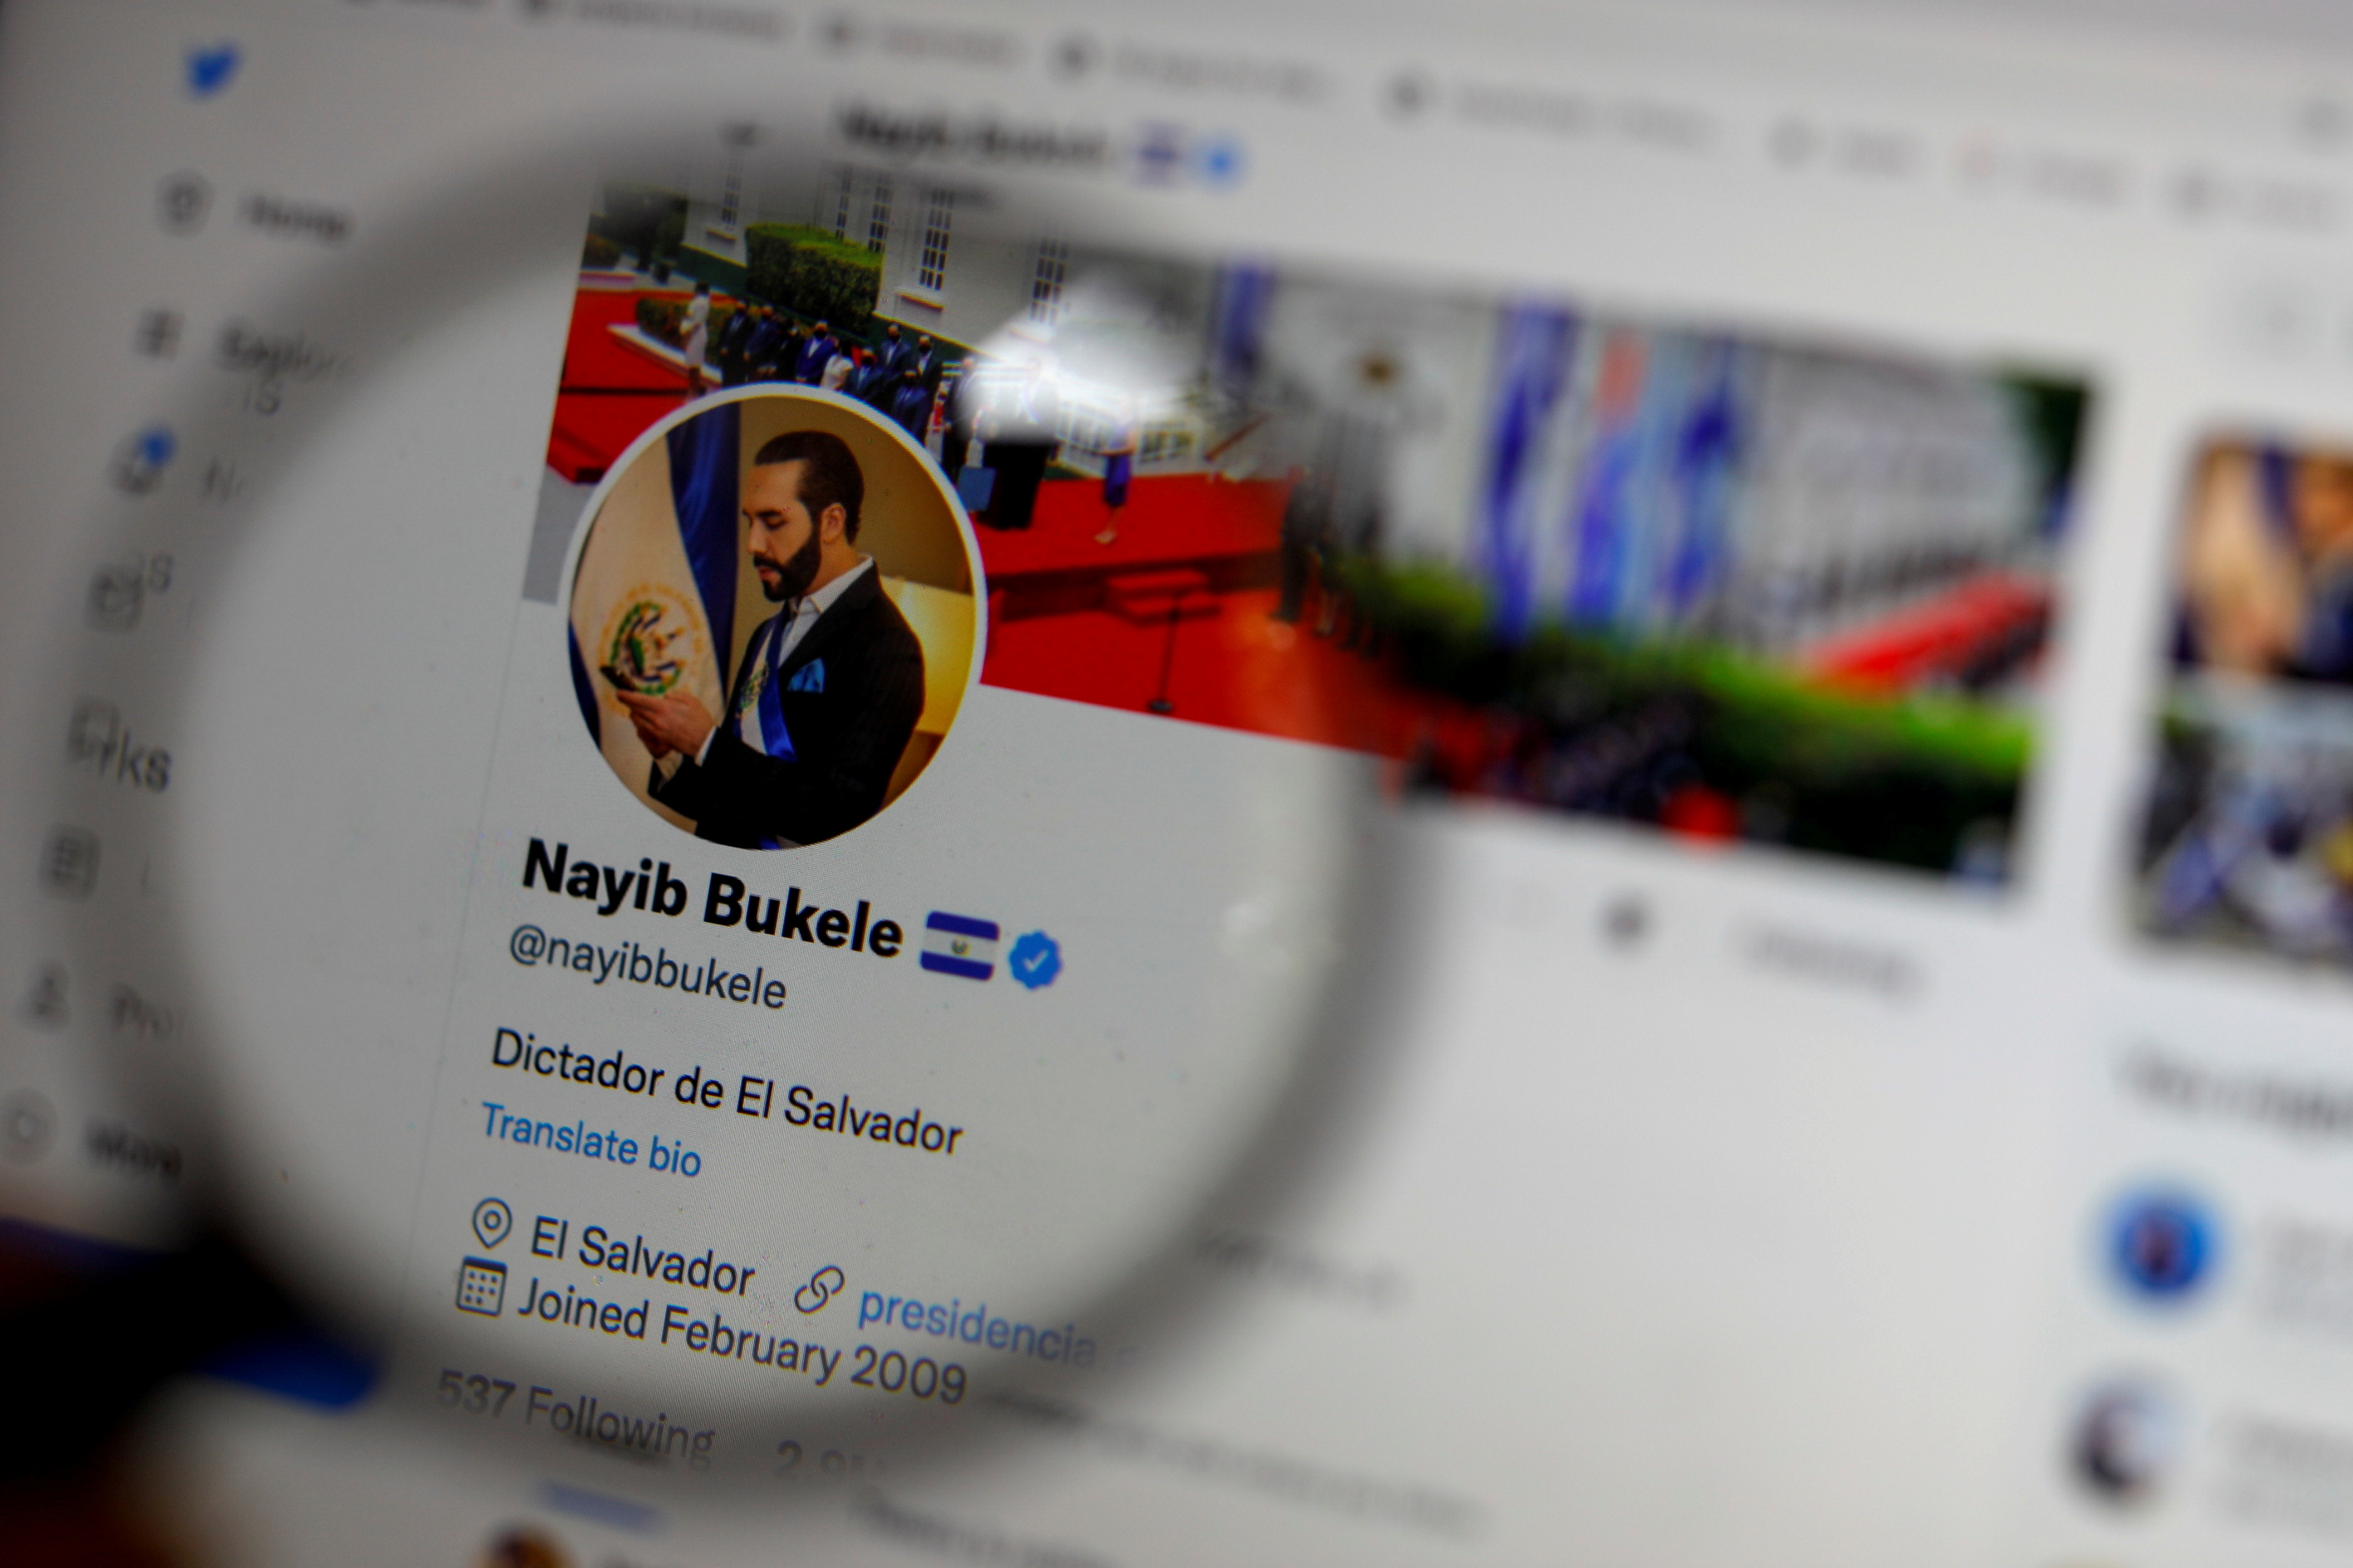 El último domingo, Bukele modifico su bio en Twitter y se presentó como "Dictador de El Salvador". Luego volvió a cambiarla para poner: "el dictador más cool del mundo mundial".